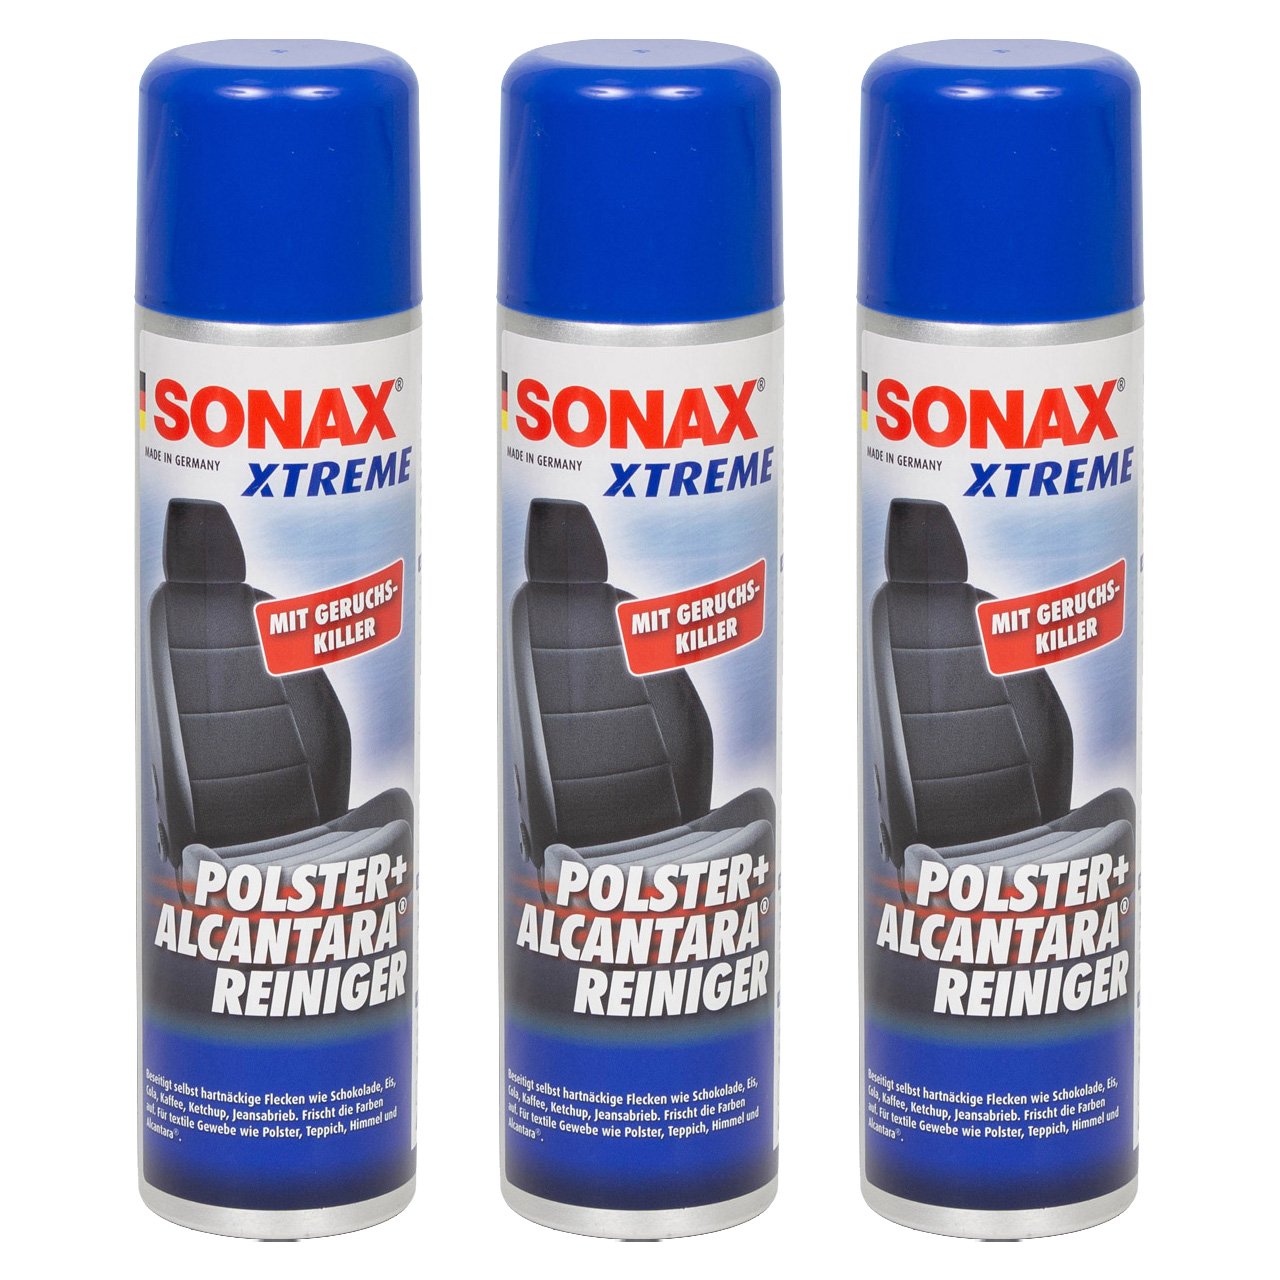 3x 400ml SONAX Xtreme Polster- & AlcantaraReiniger Geruchskiller Reiniger 206300